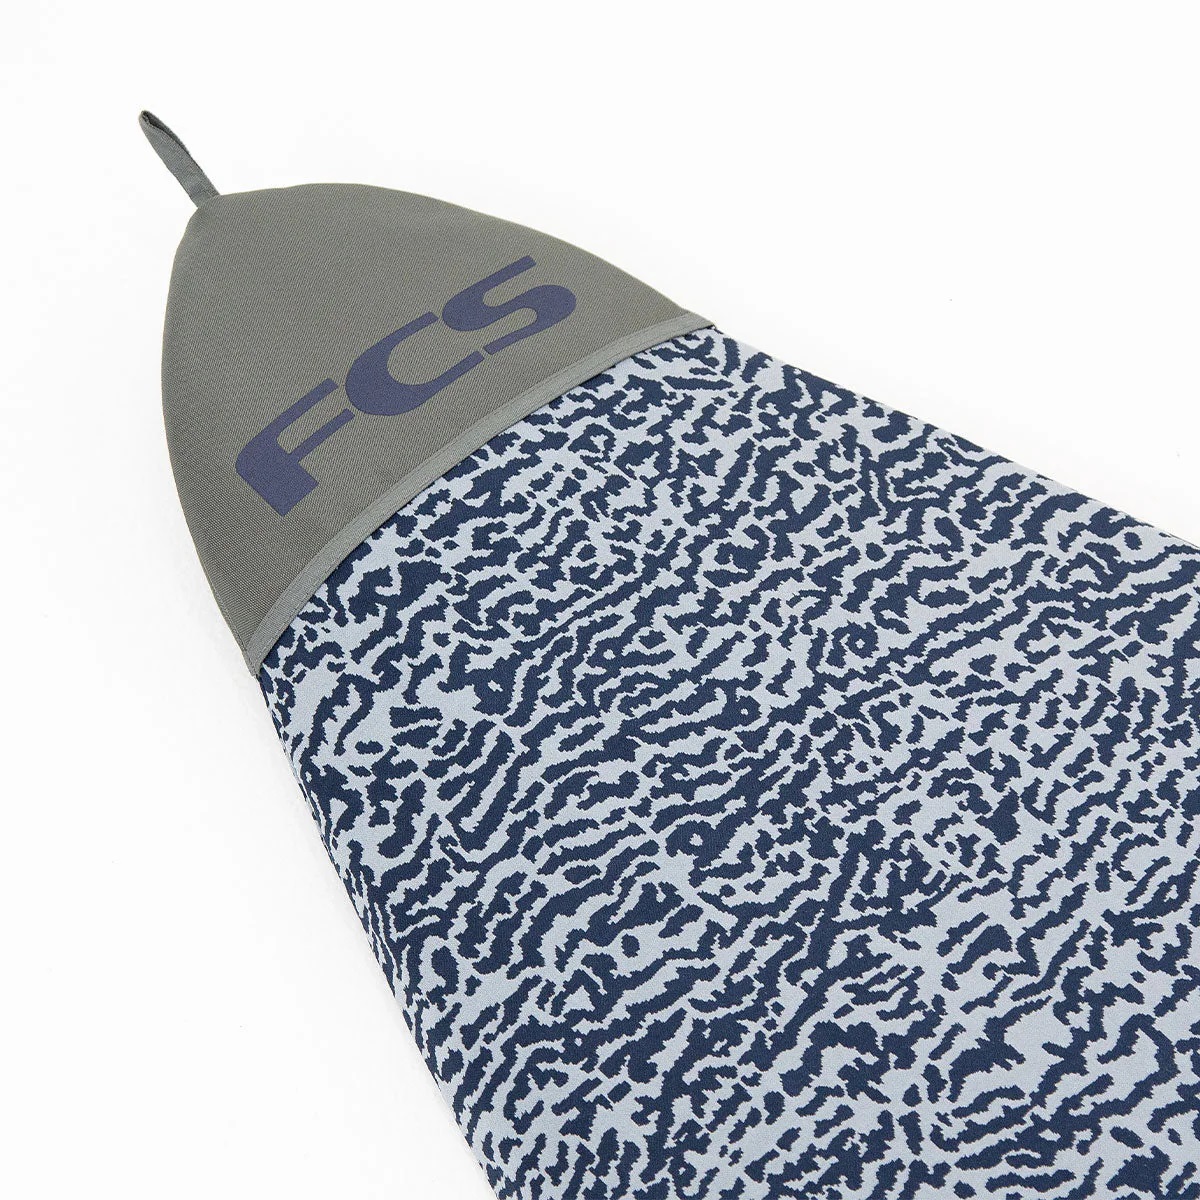 FCS STRETCH FUN BOARD COVER 6'0" カラー2種類 サーフボードケース フィッシュボード ファンボード